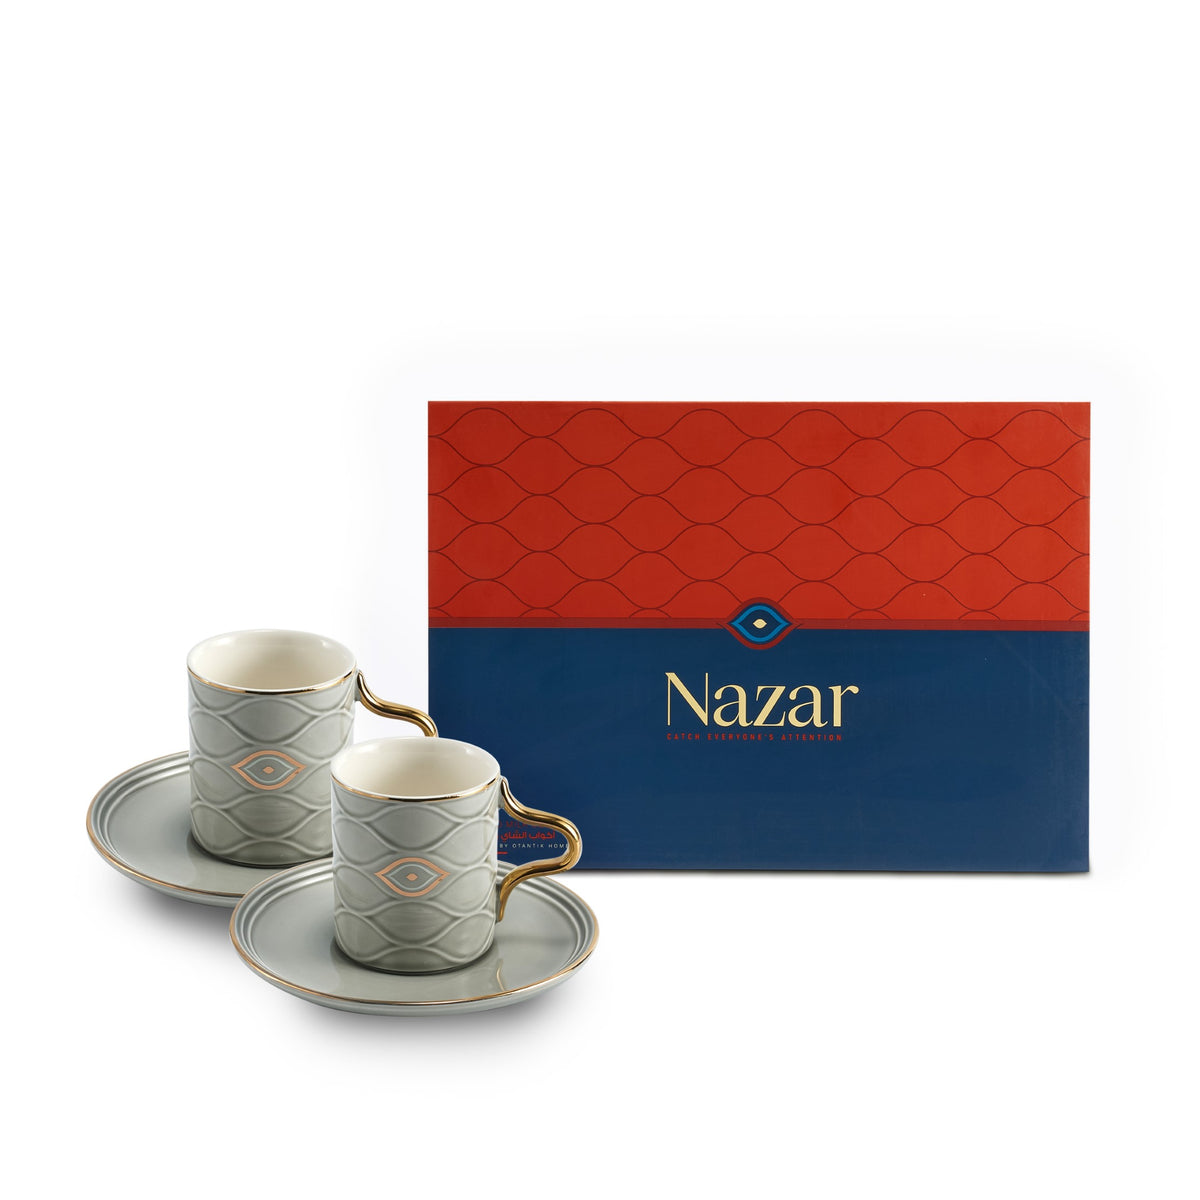 NAZAR - Turkish Coffee Set